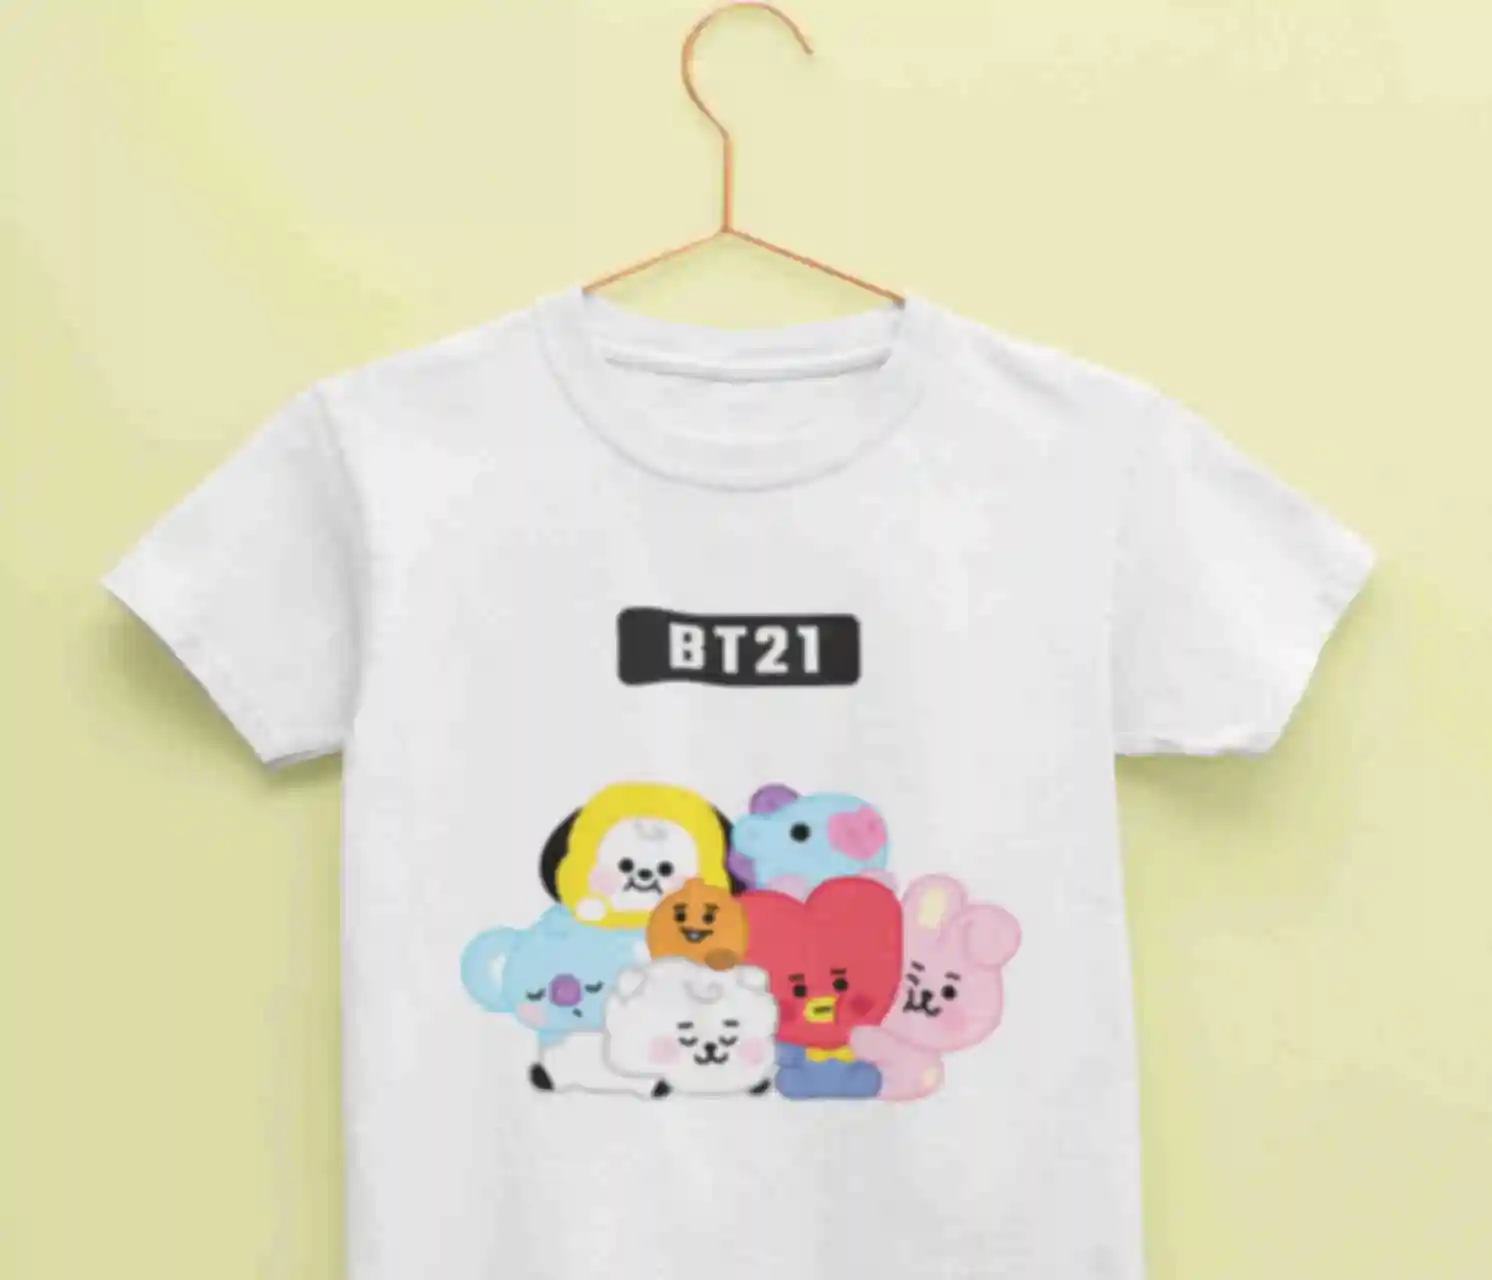 Футболка №11 • BT21 • БТС ⦁ Мерч ⦁ Одежда для фанатов K-POP и корейской группы BTS. Фото №1